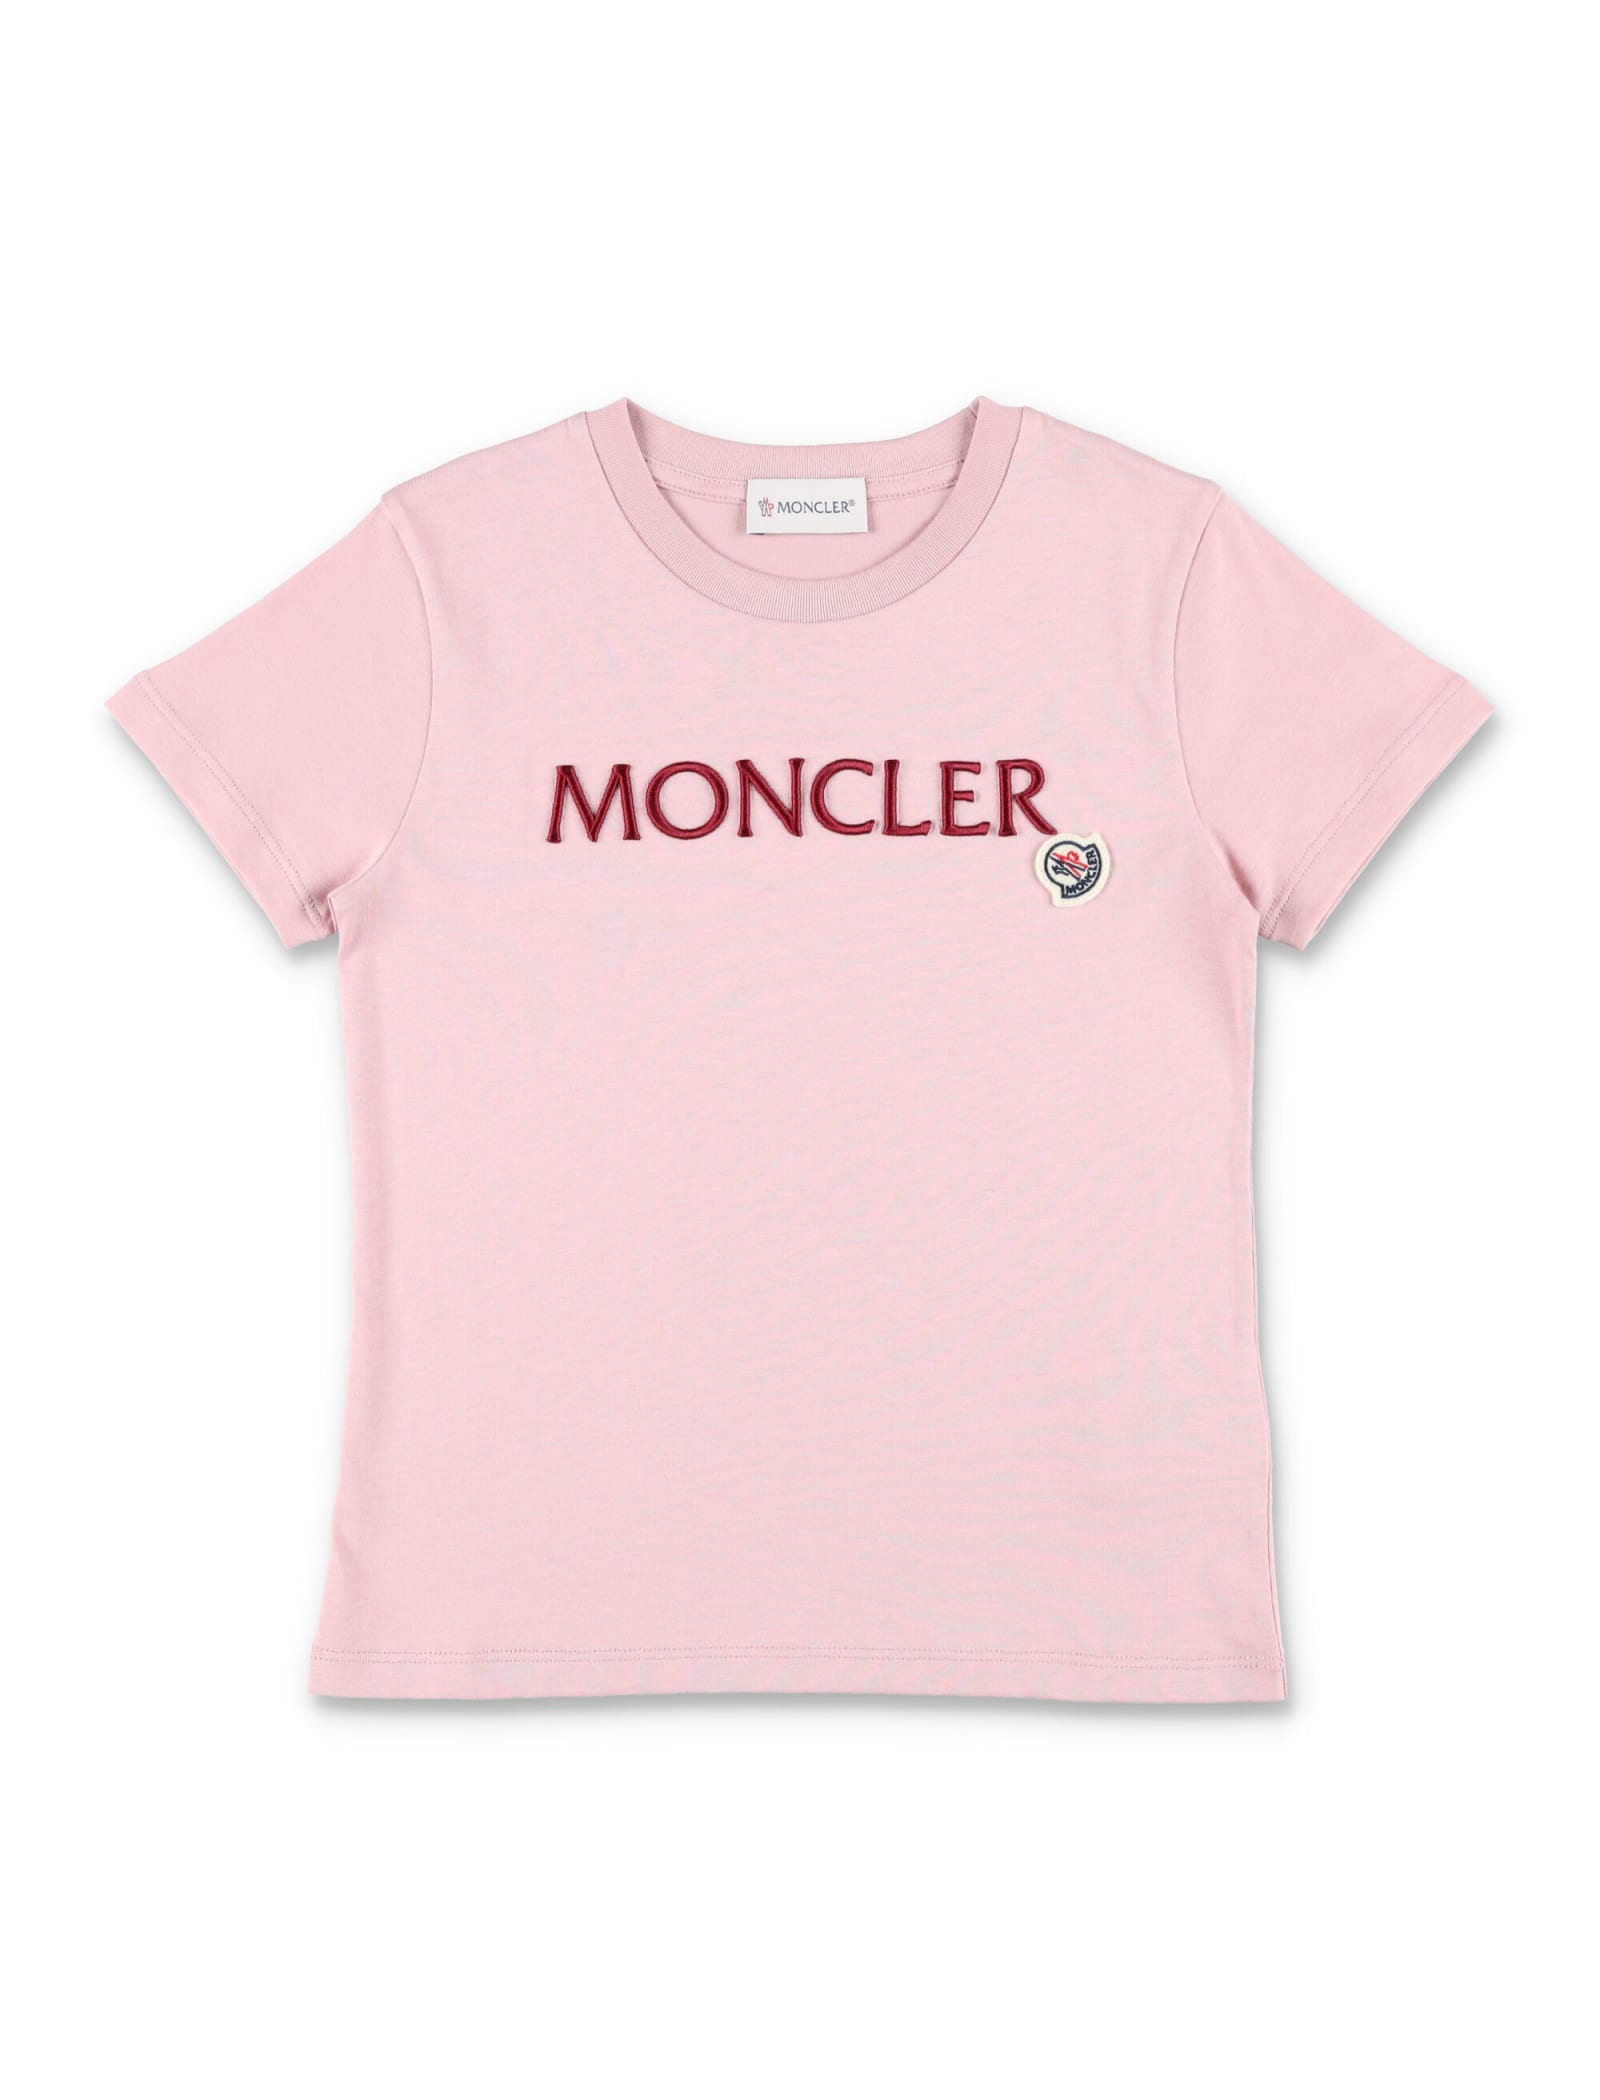 Moncler Kids' Logo T-shirt In Pink